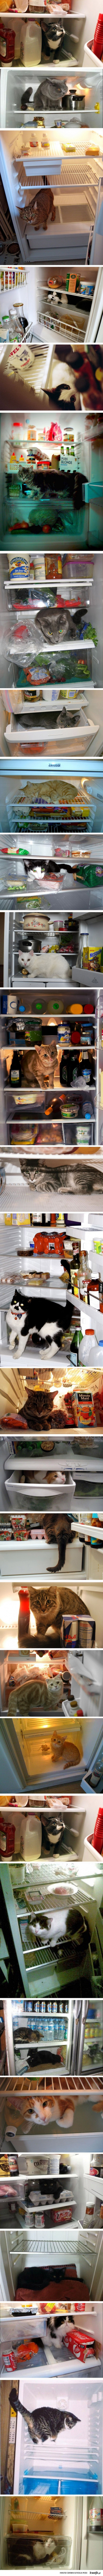 Koty w lodówce